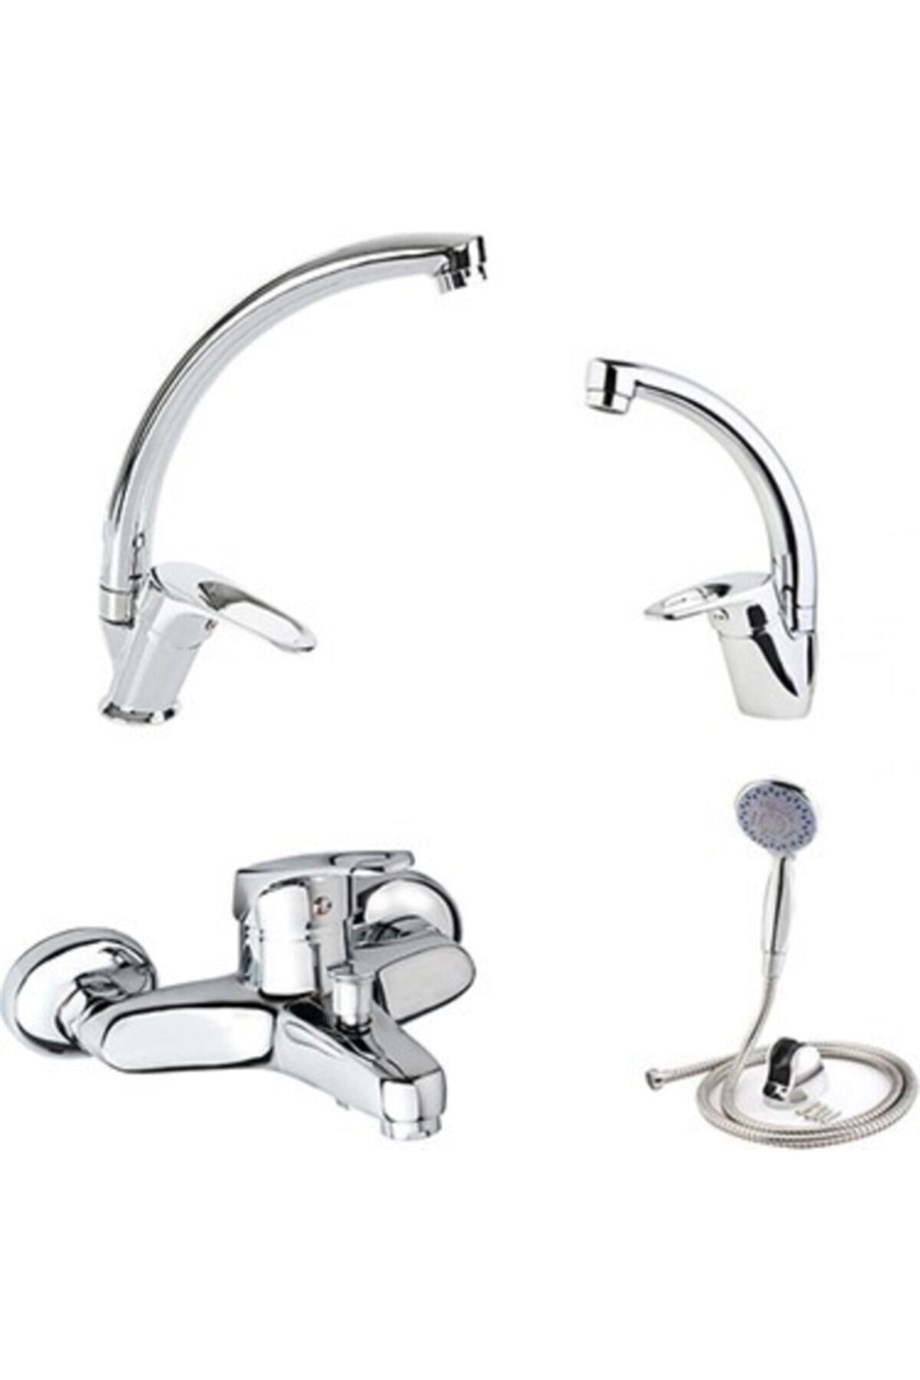 Yücel 4'lü Set Lavabo-mutfak-banyo Bataryası + Duş Seti |  Yapimarketsepeti.com